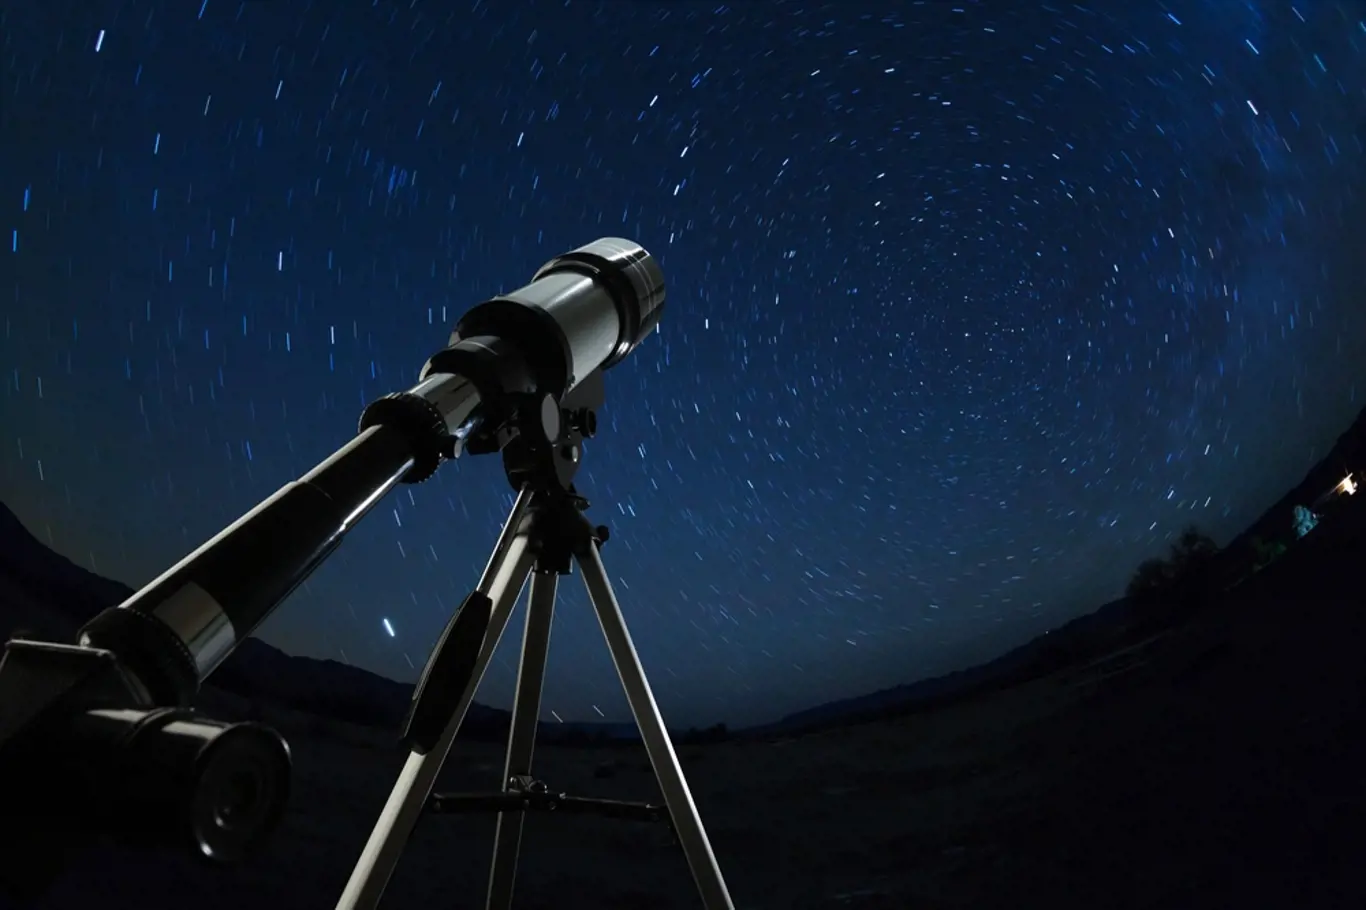 Astronomie nám může pomoci pochopit Boha, věří někteří vědci.